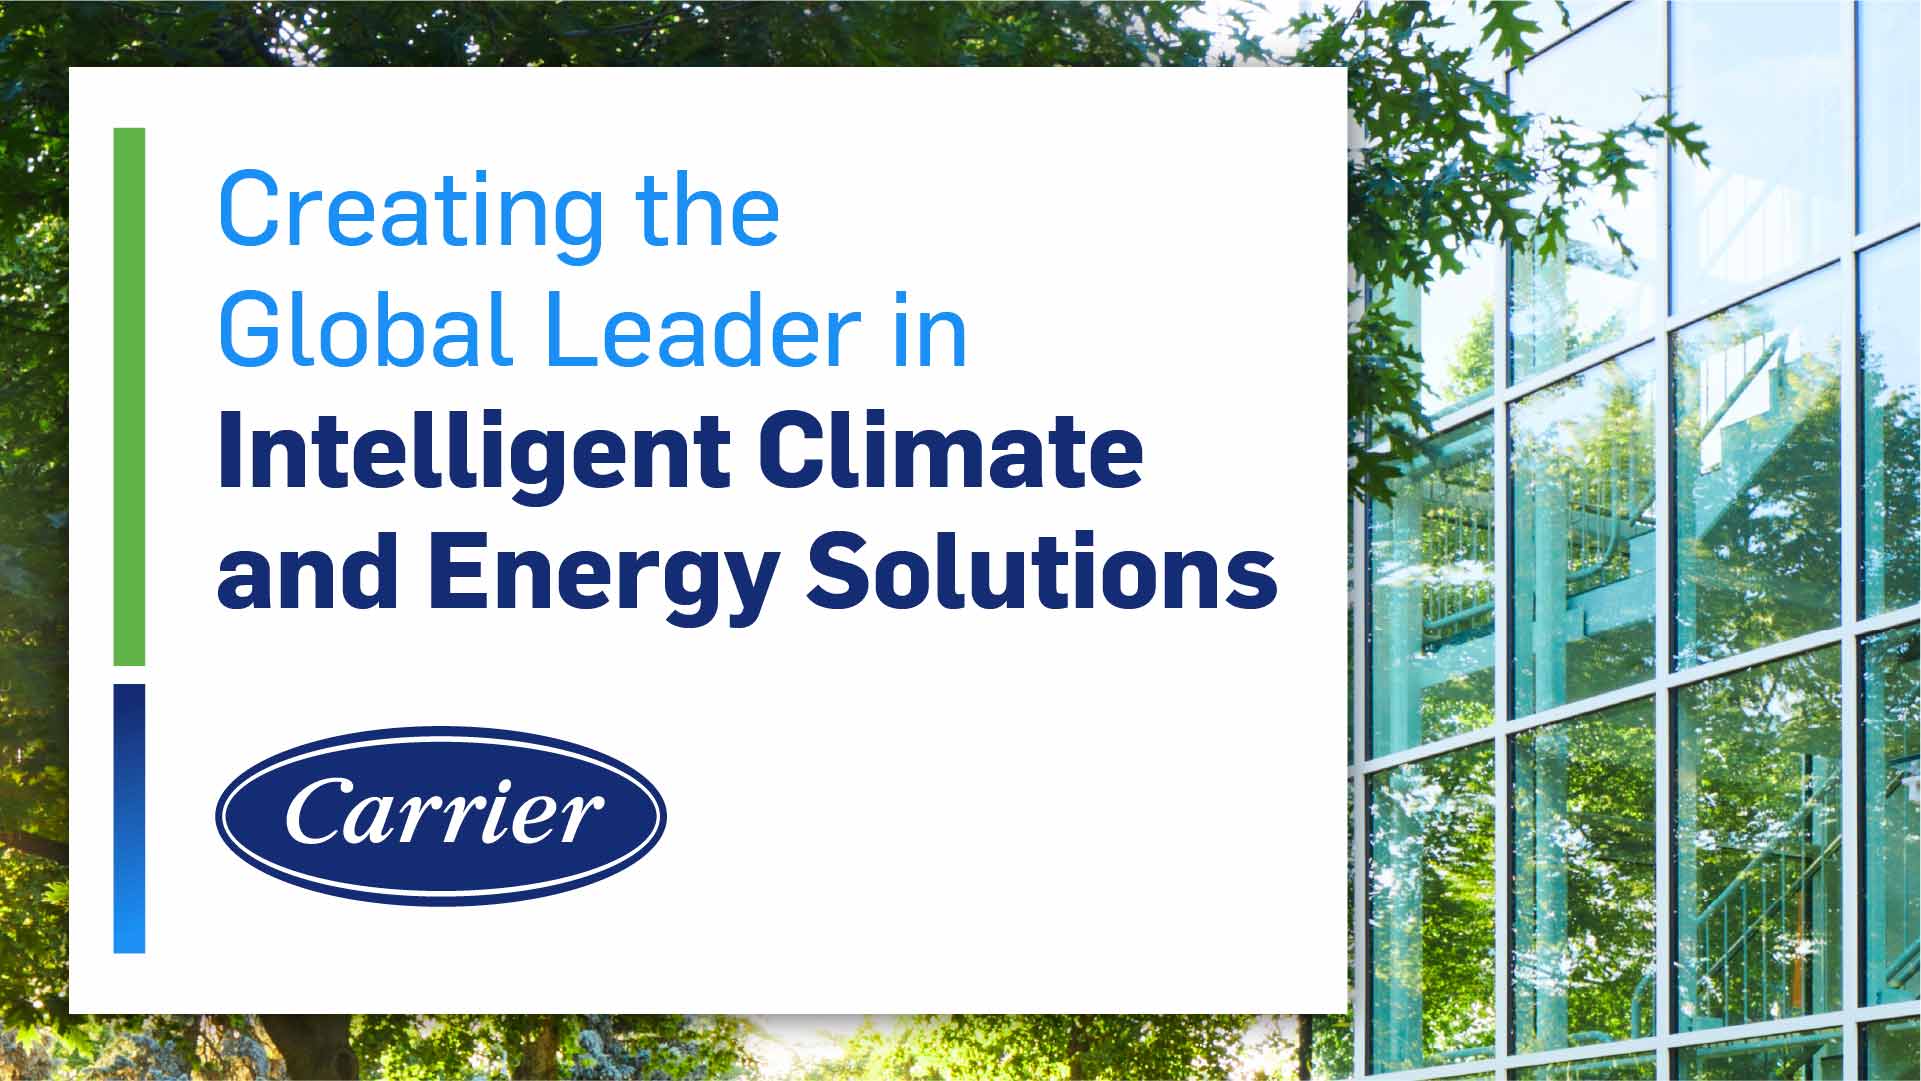 Carrier gibt die Transformation seines Portfolios bekannt, um zu einem globalen Marktführer im Bereich der intelligenten Klimaund Energielösungen zu werden 